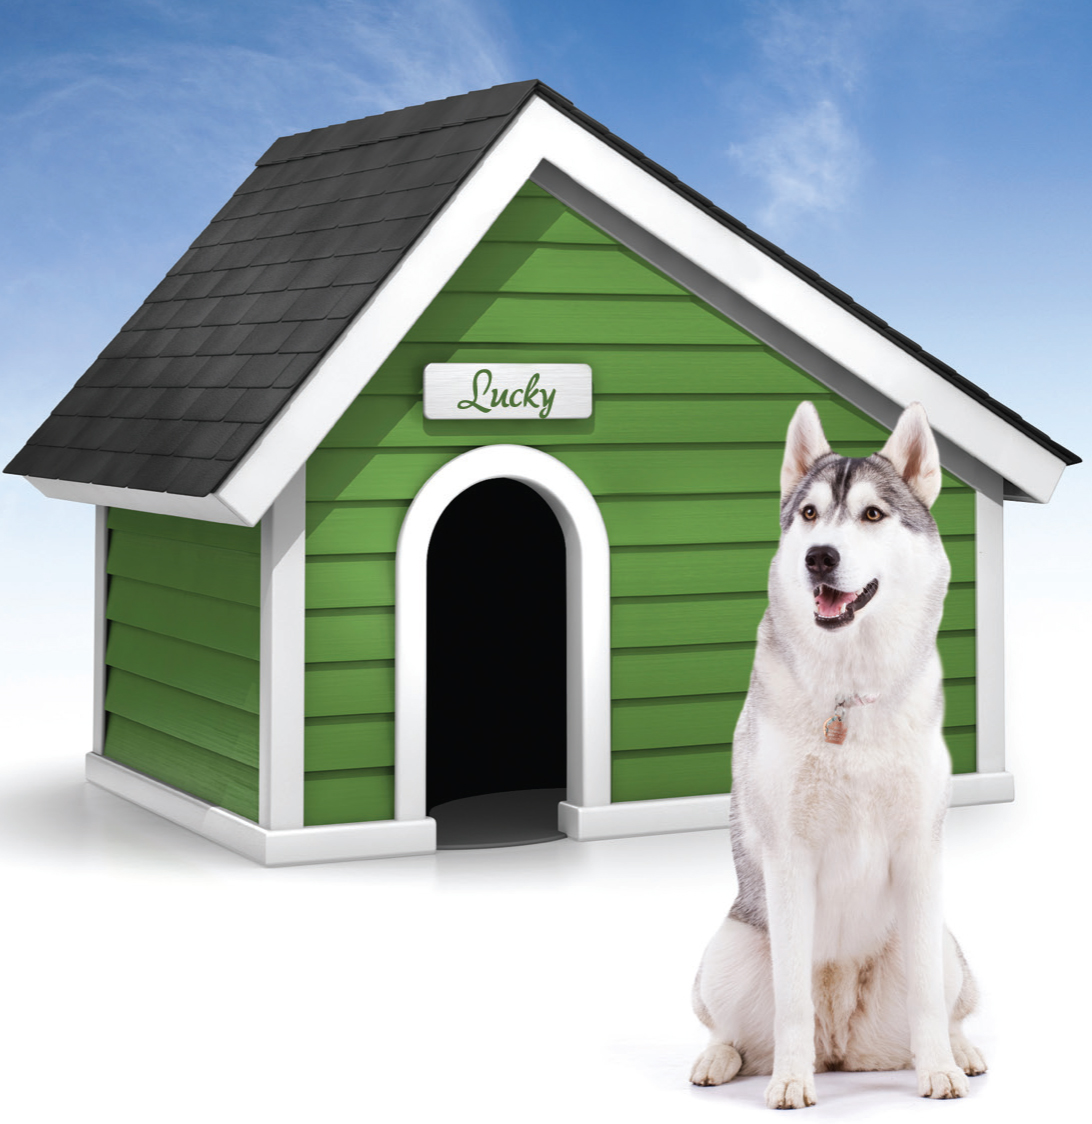 The dog house demo dog houses info. Будка для собаки хаски. Дом для собаки. Красивые собачьи будки. Собака с конурой.